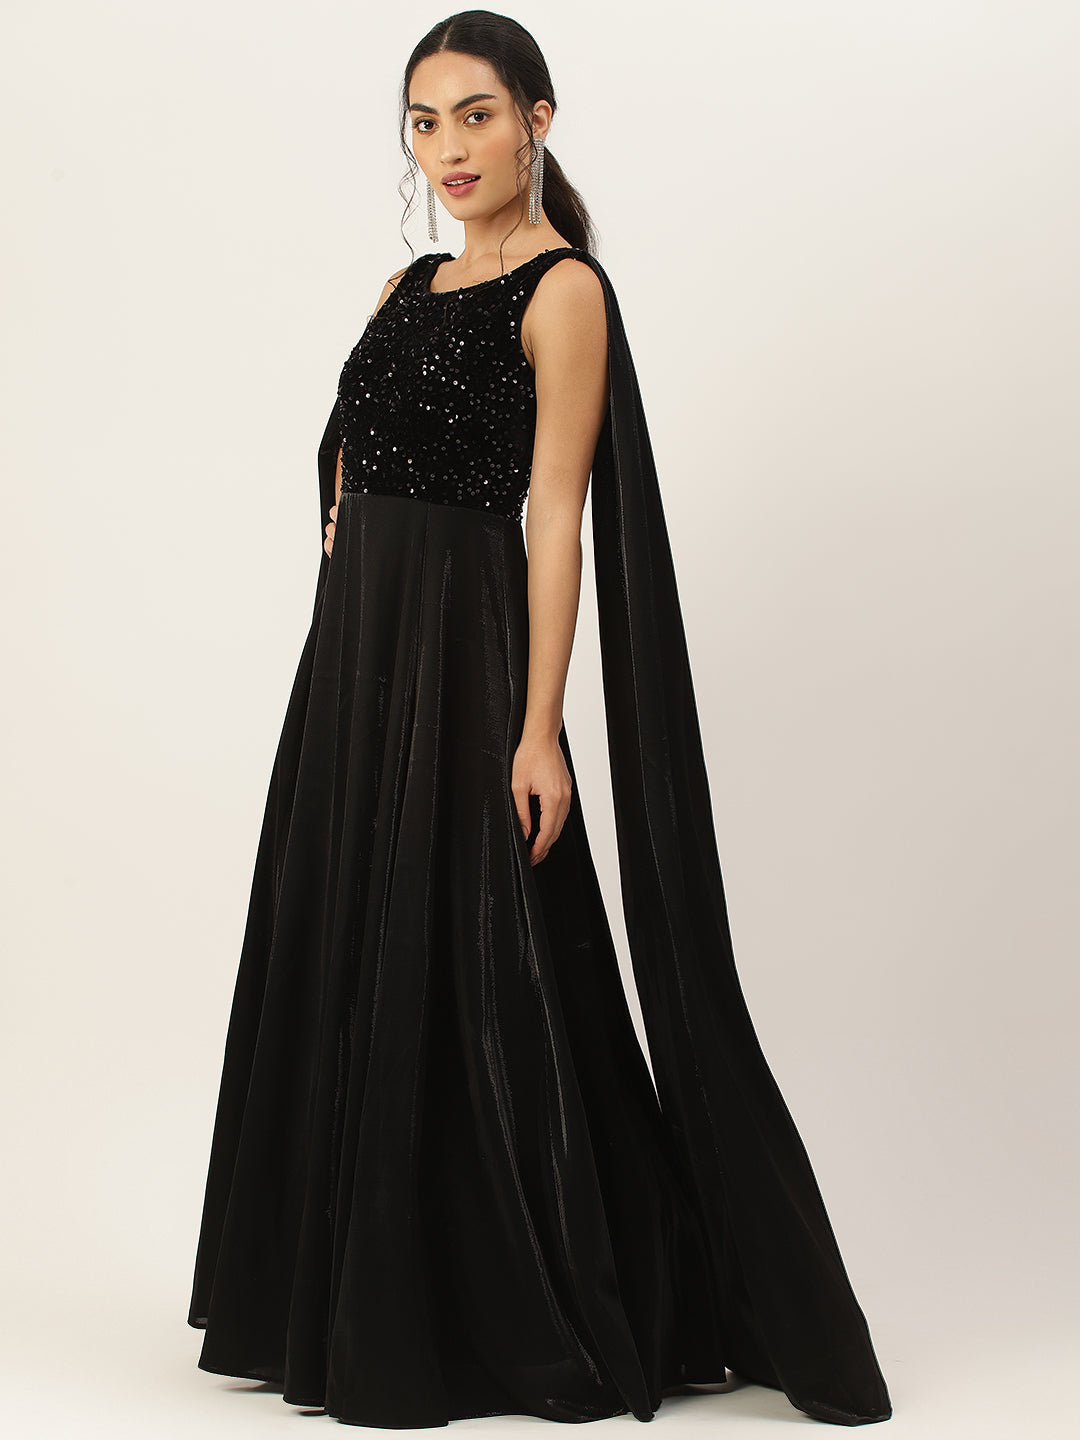 Black Velvet Embellished Ball Gown with Drape Sleeves